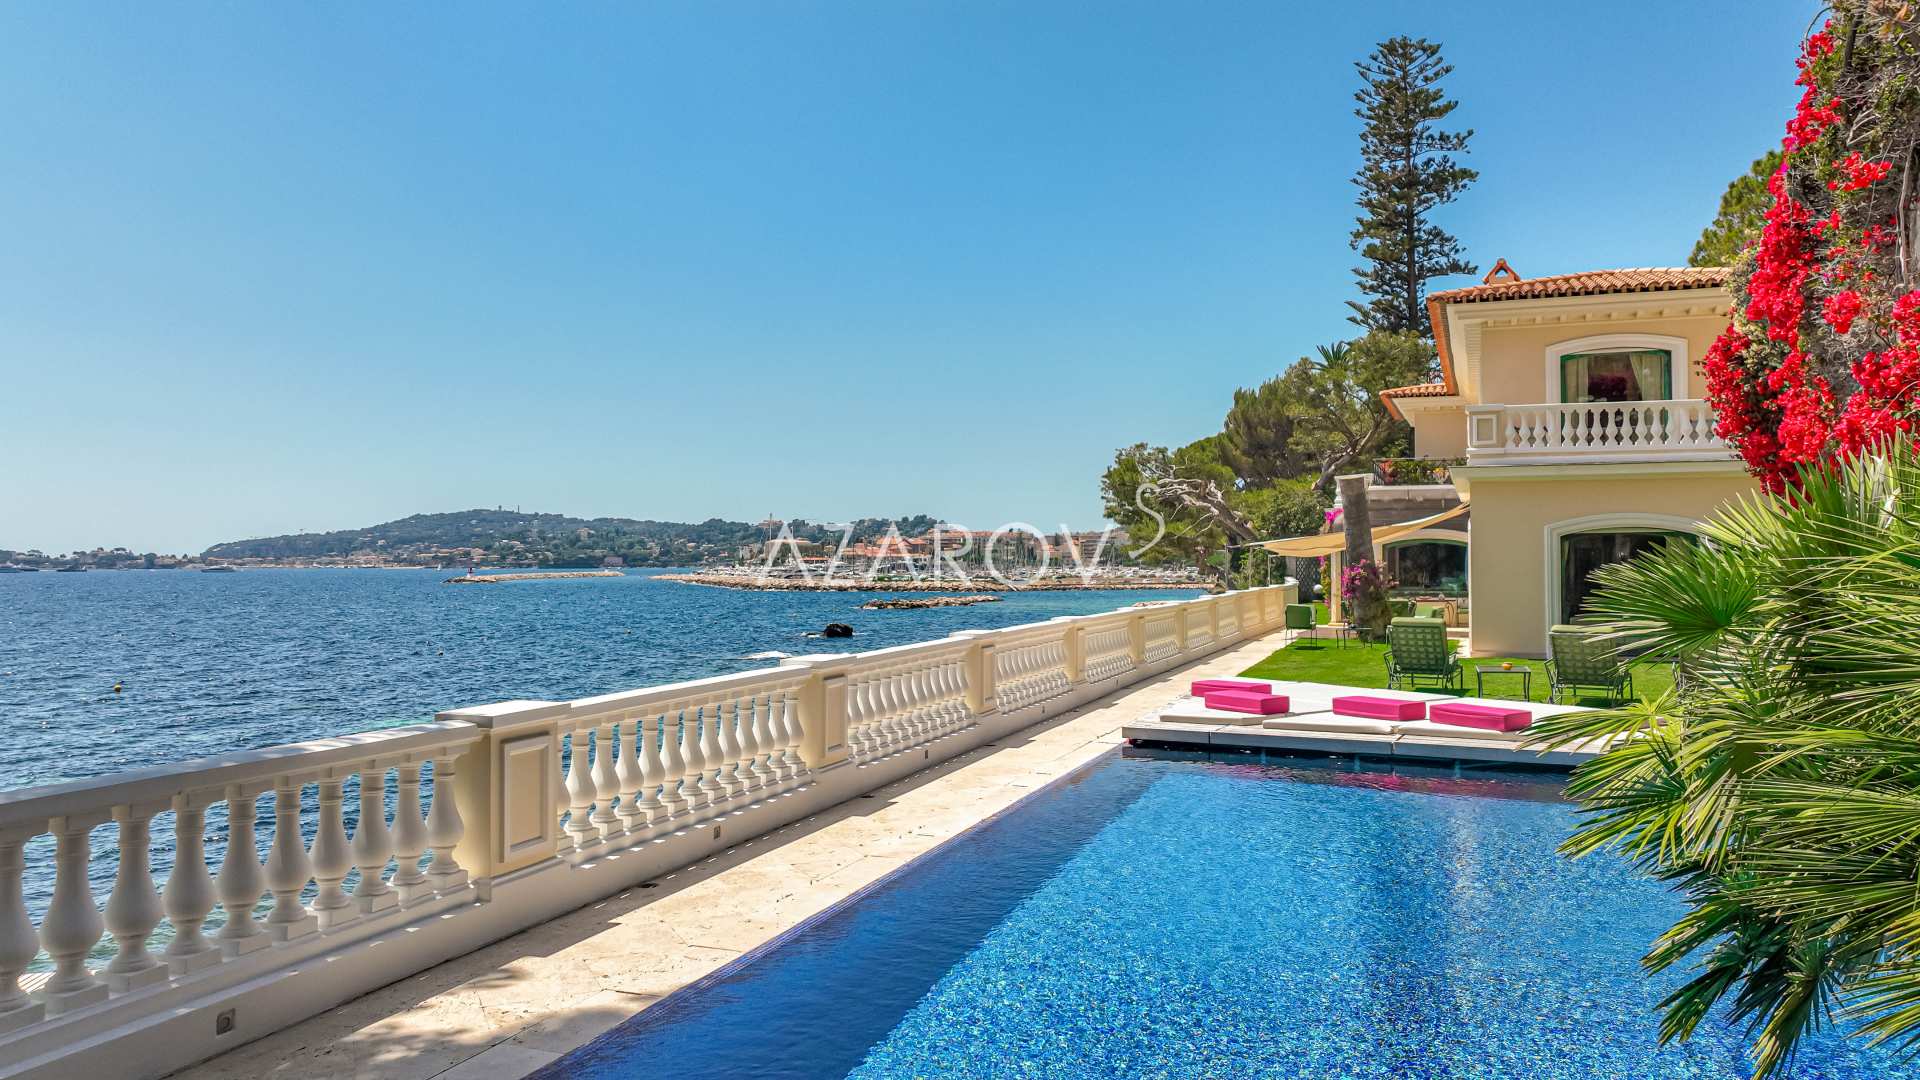 Rent a luxury villa in Beaulieu-sur-Mer, France